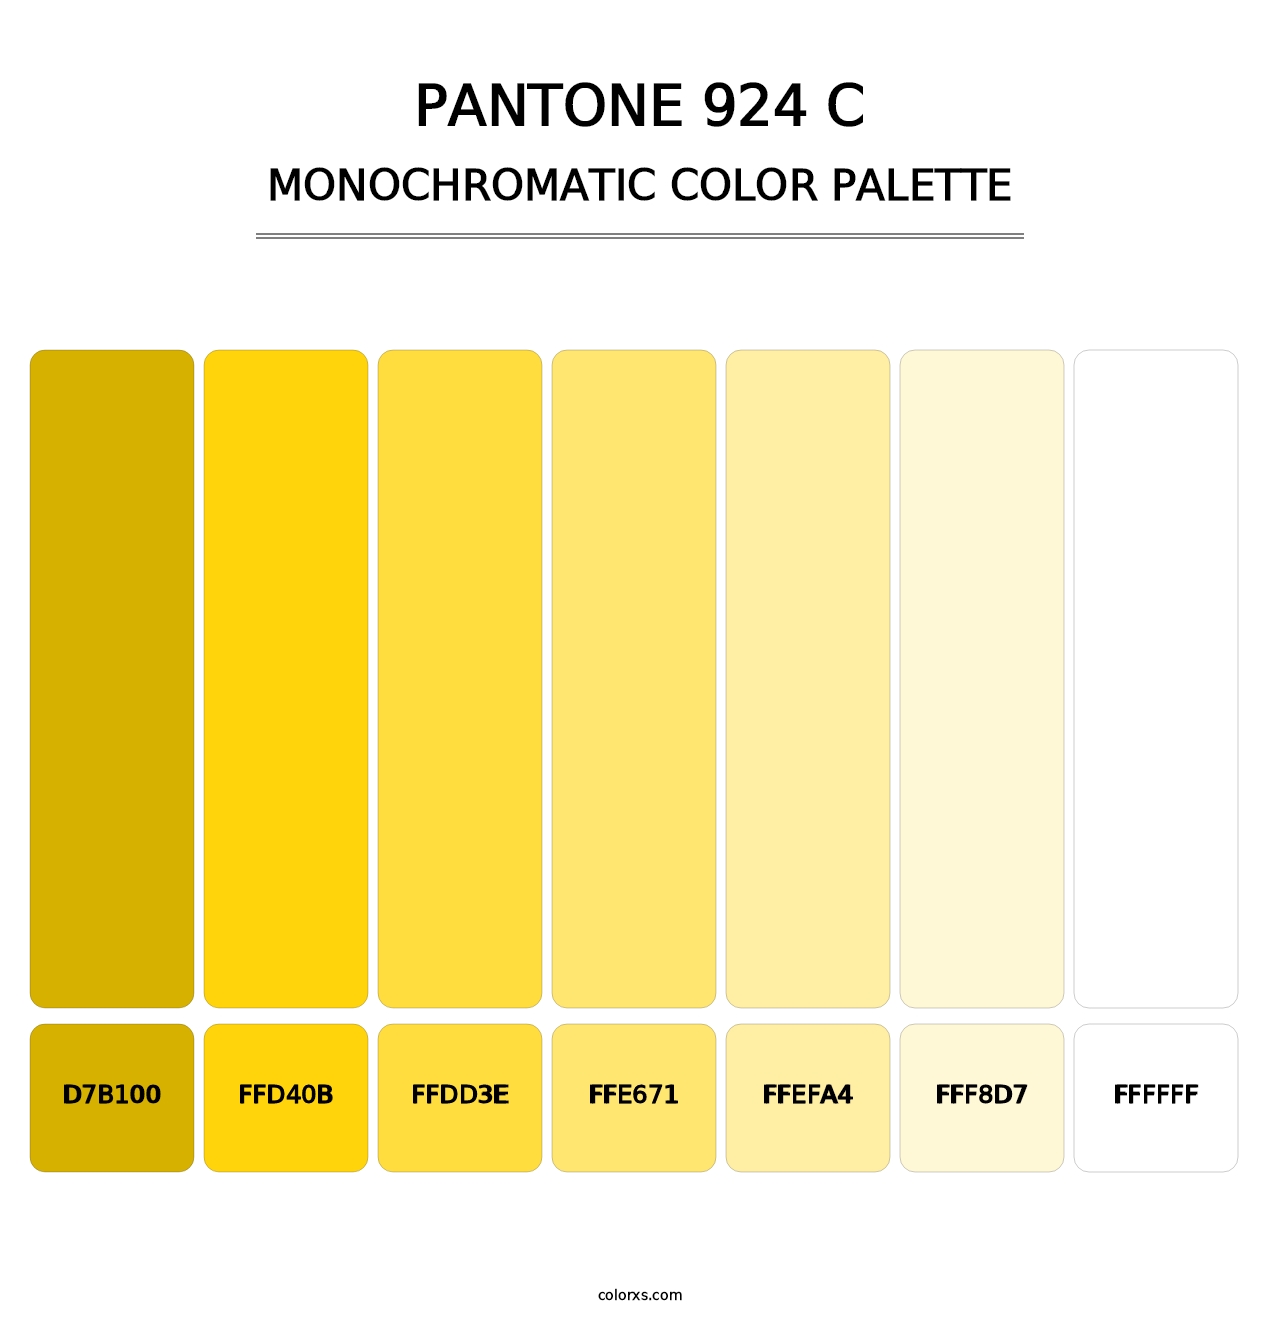 PANTONE 924 C - Monochromatic Color Palette